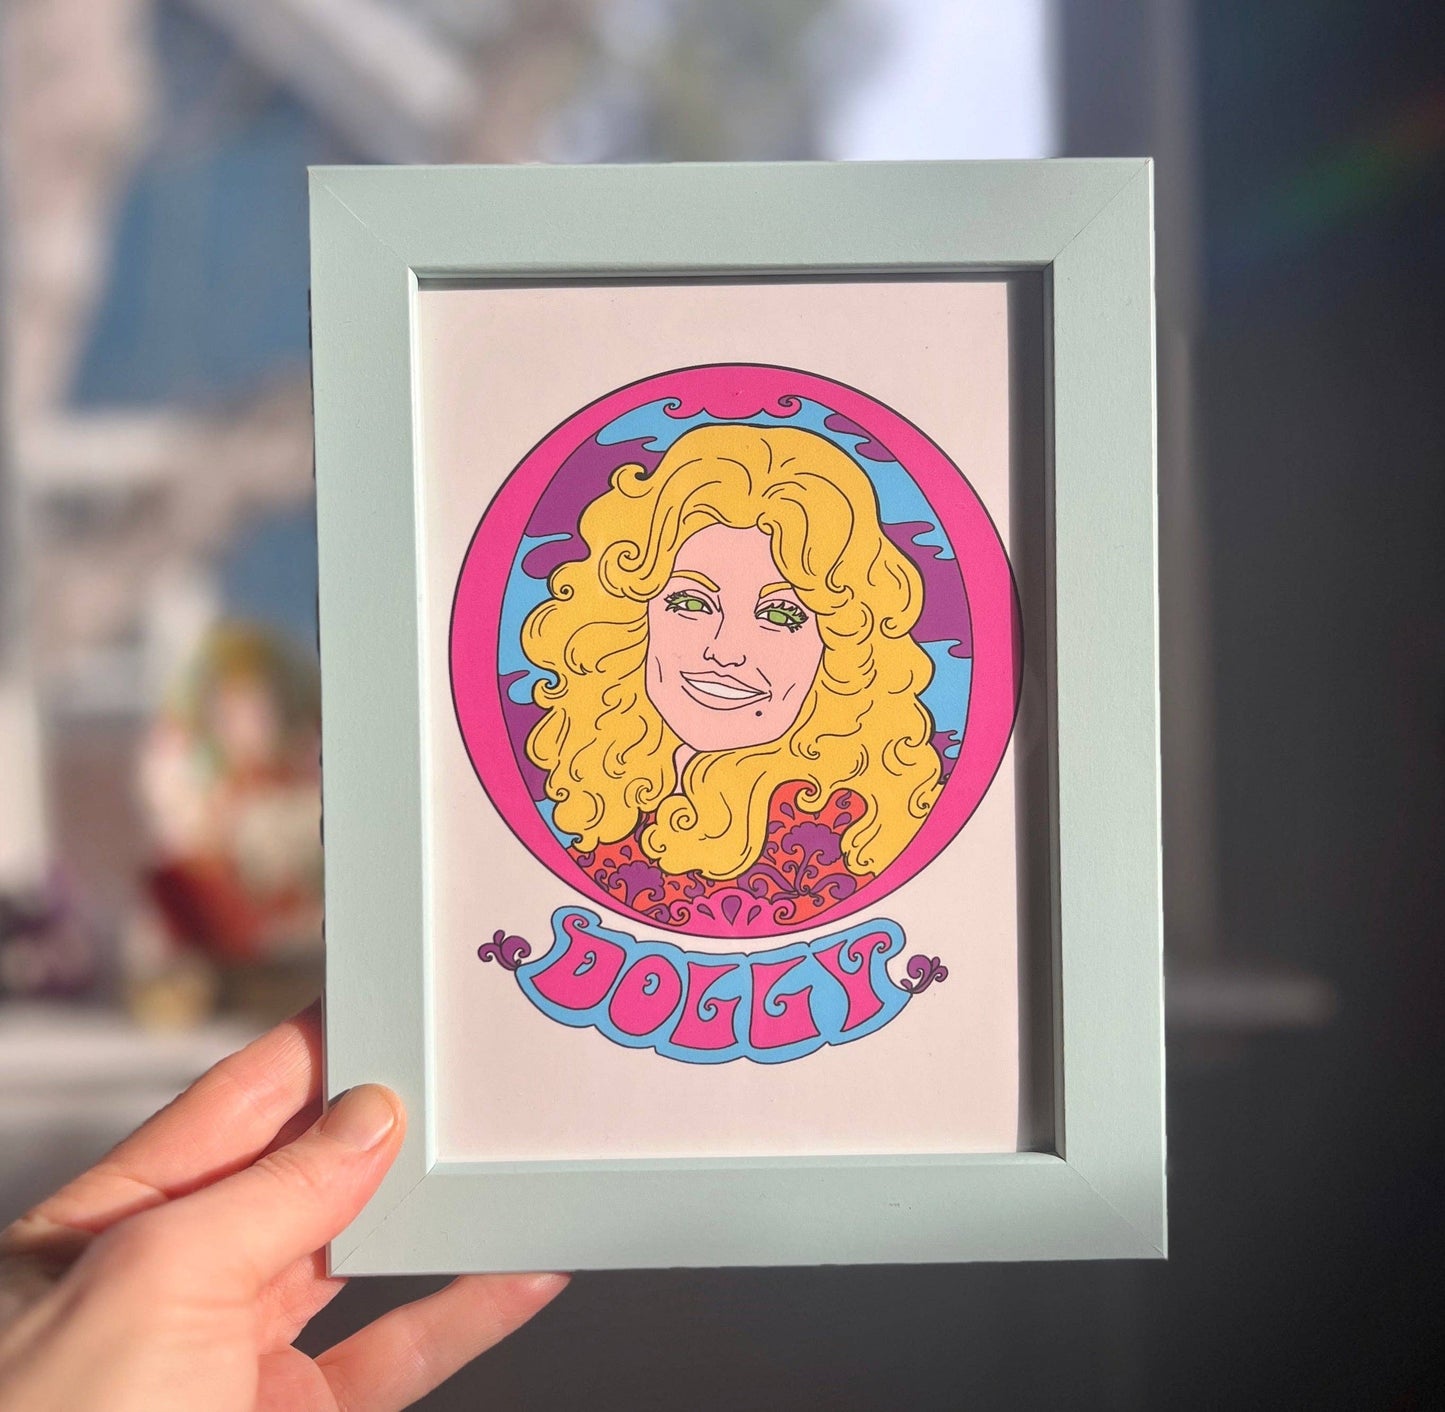 Dolly Framed Print